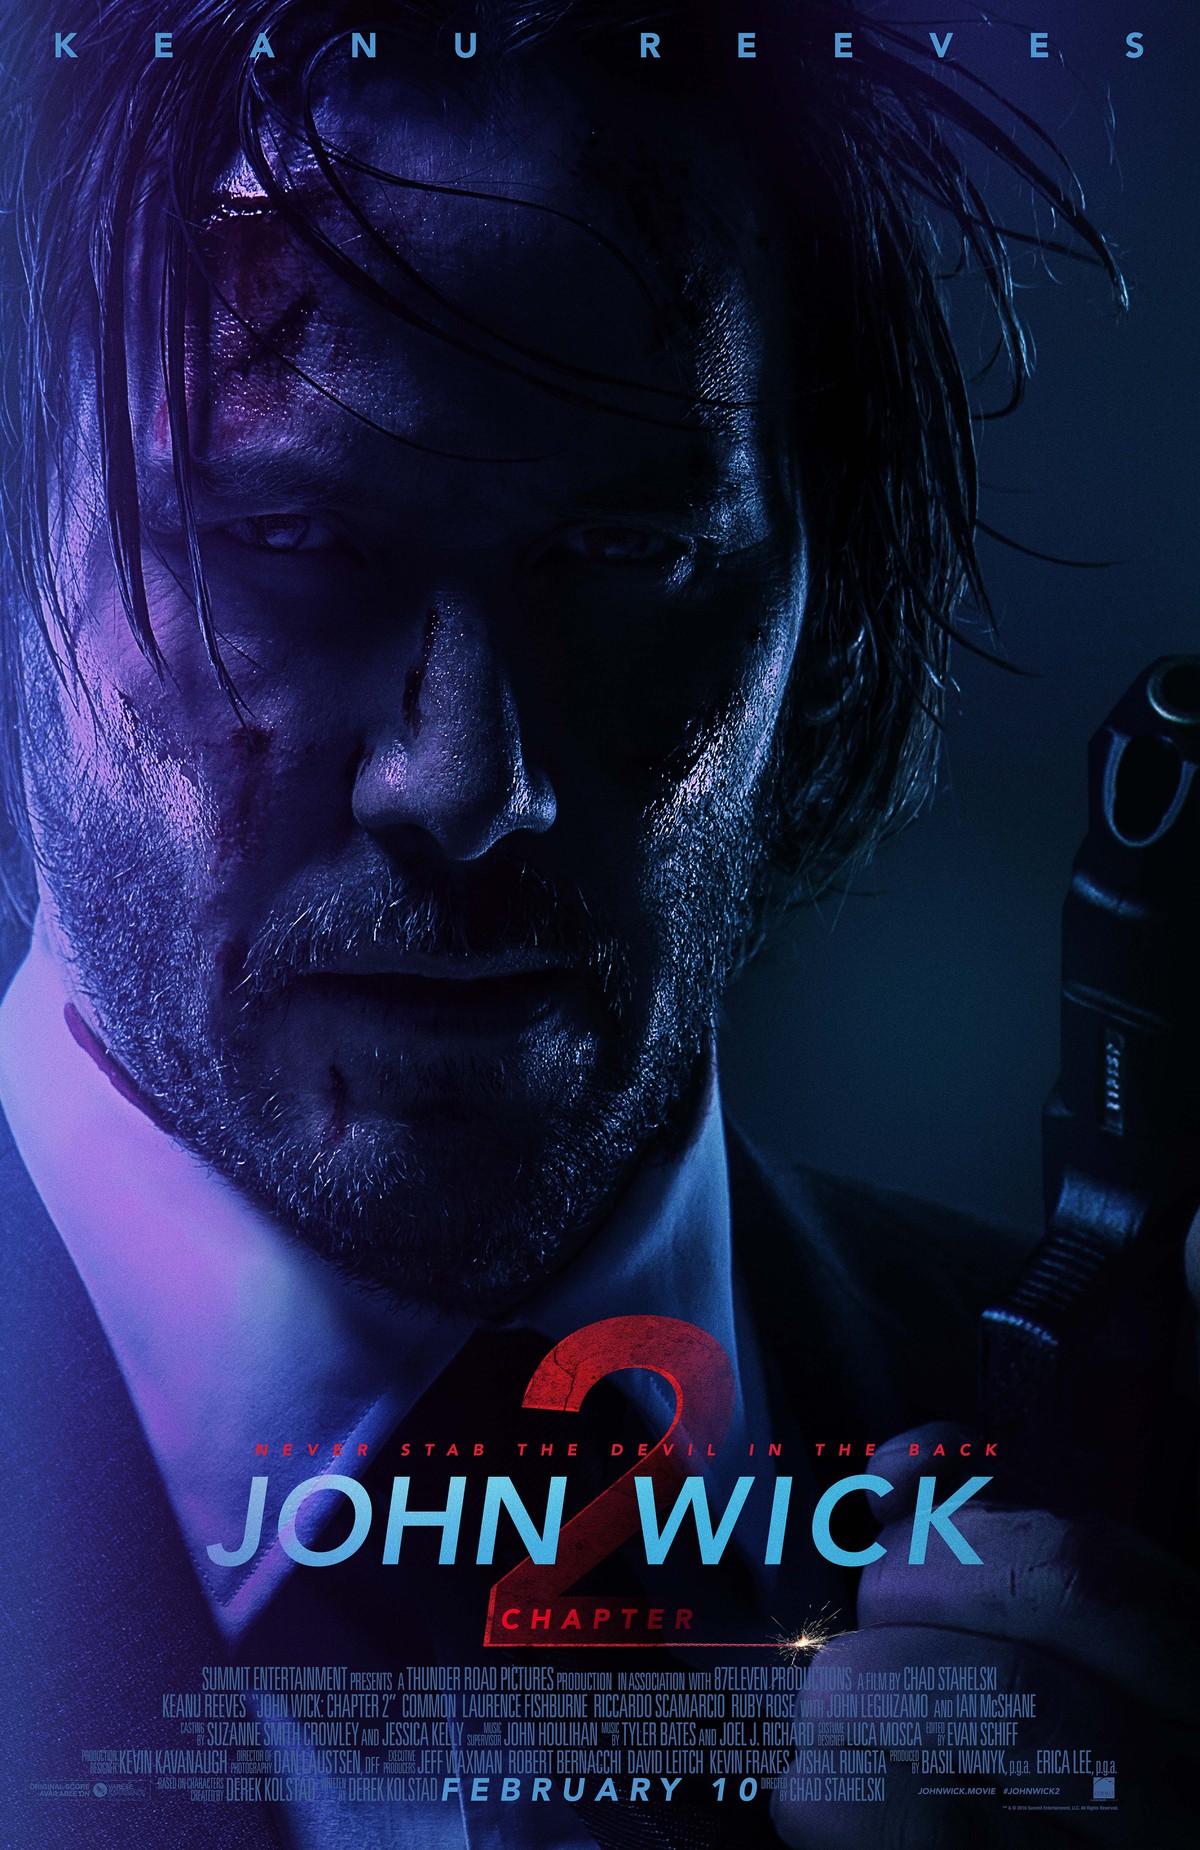 Ain't It Cool?!: John Wick (2014)